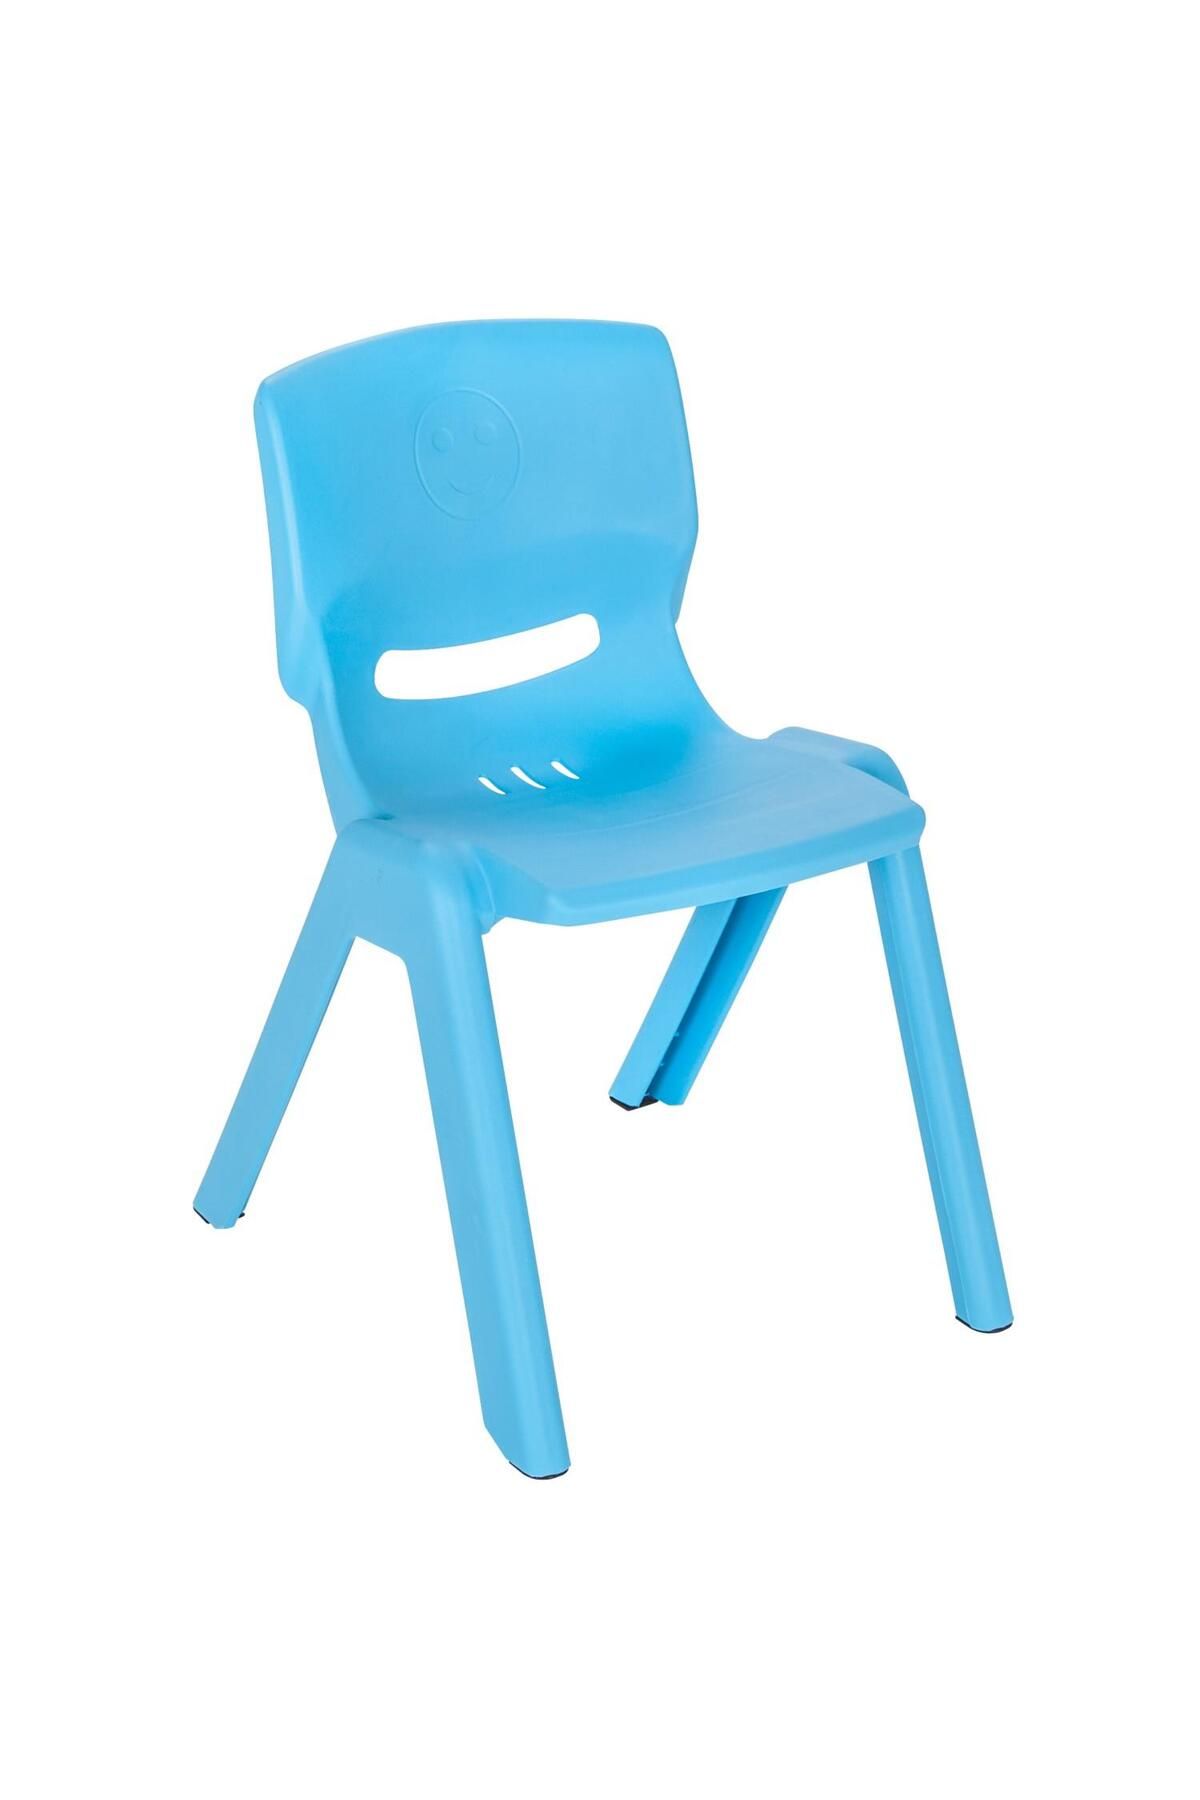 PİLSAN Pilsan Oyuncak Hapyy Sandalye Mavi Plastik Çocuk Sandalyesi